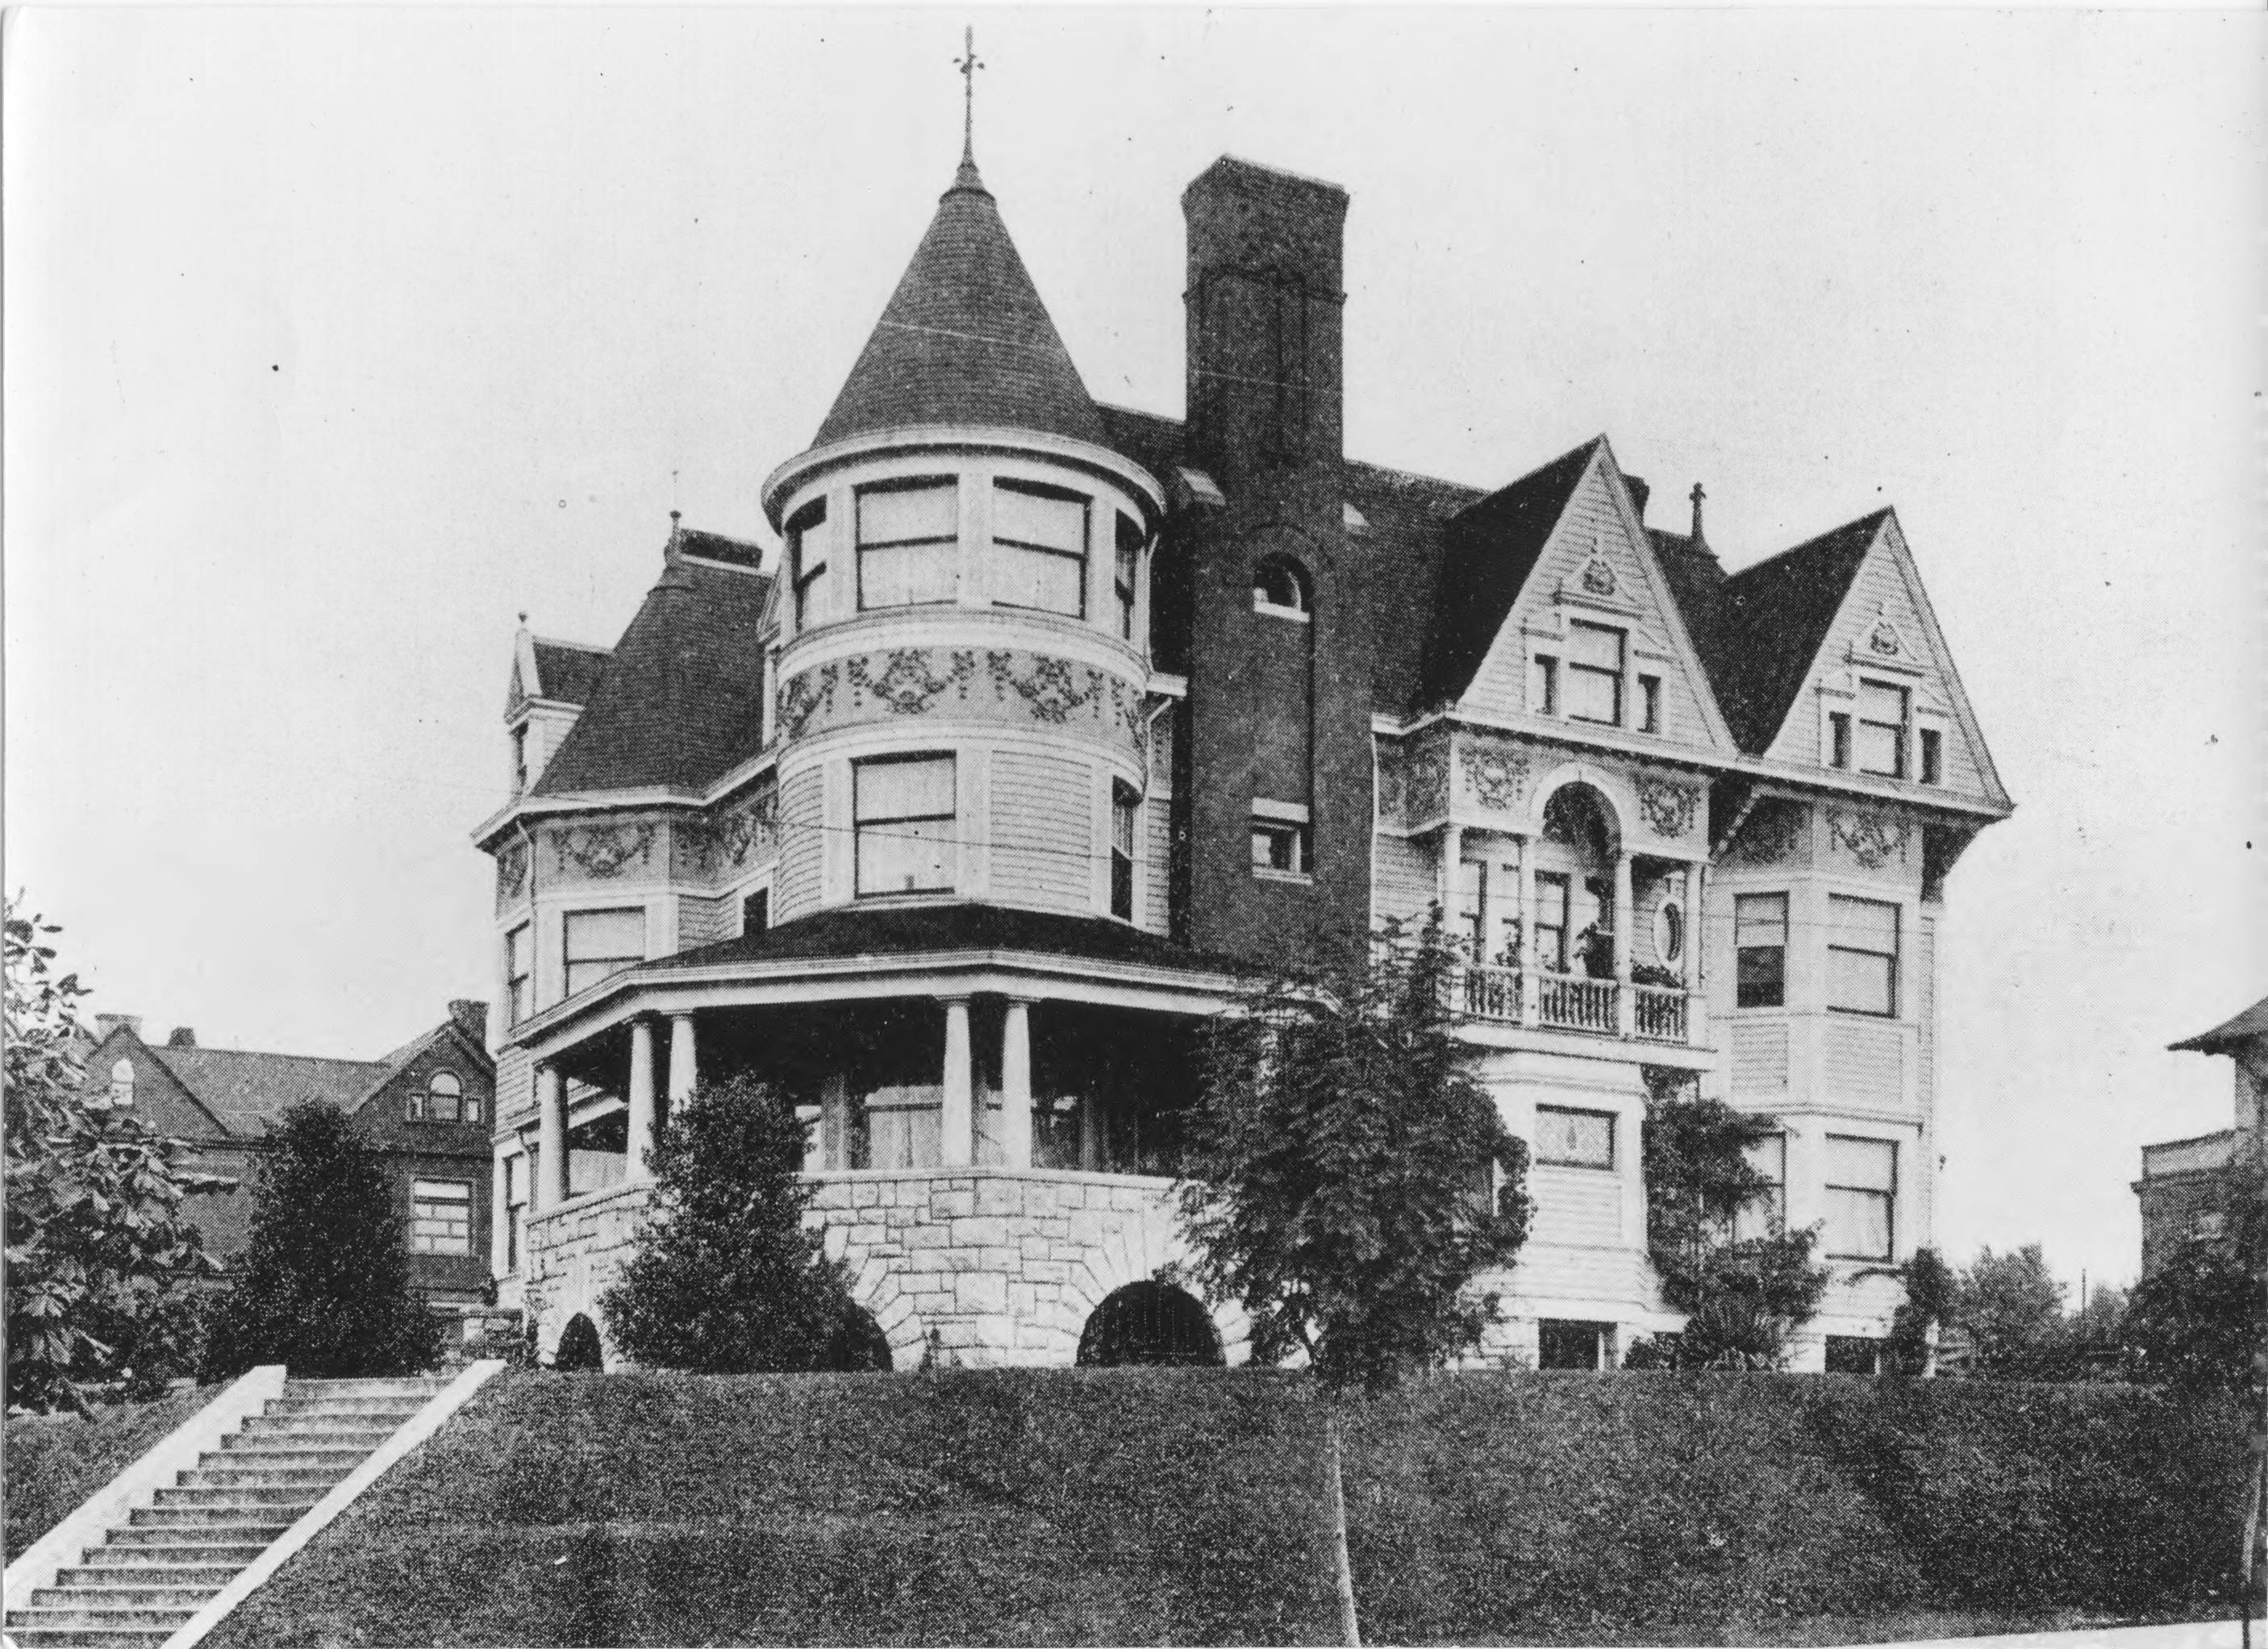 Vaeth Mansion (date unknown)